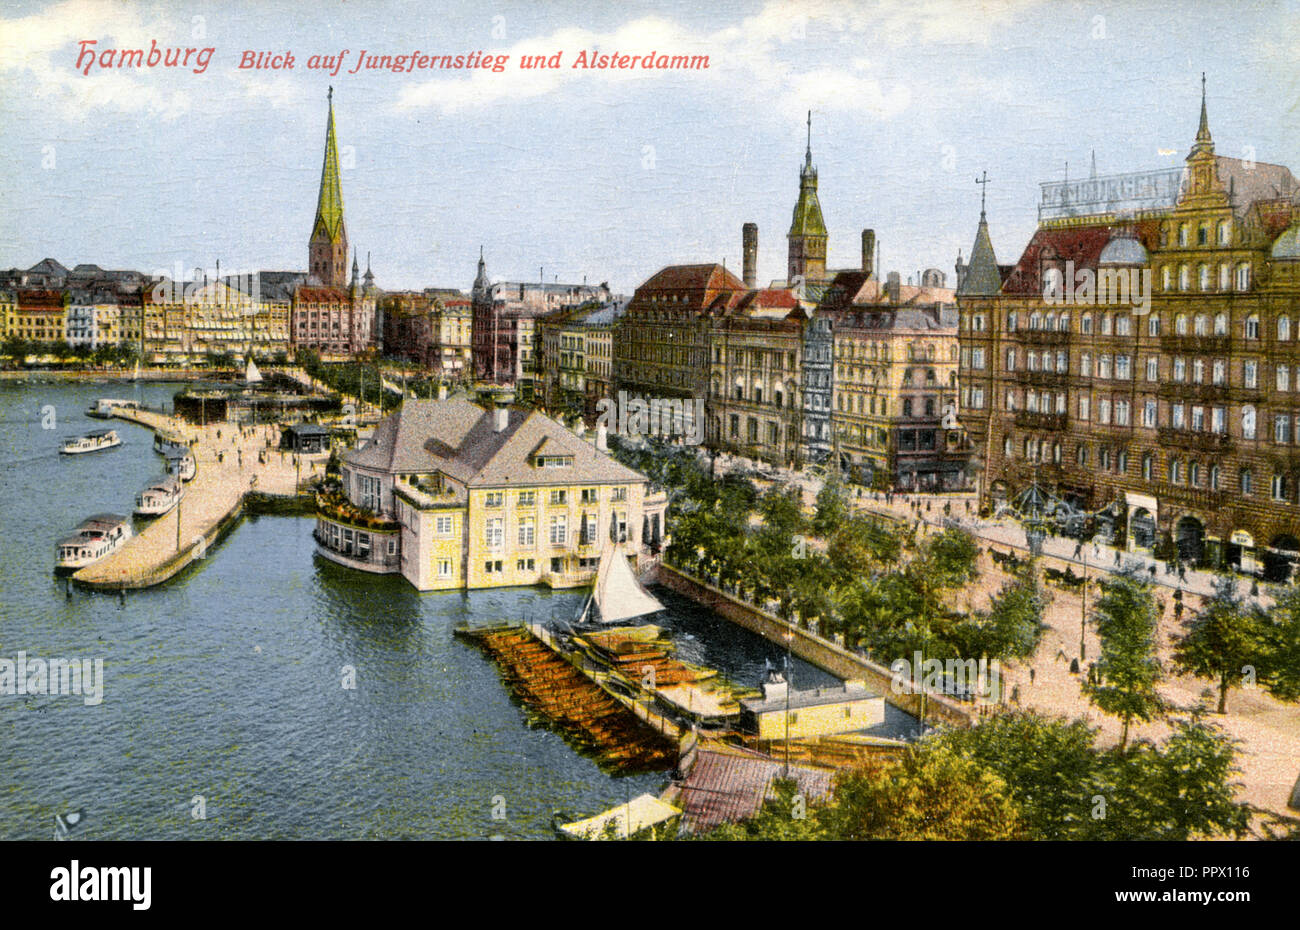 Hamburg: Blick auf Jungfernsteig und Alsterdamm, Stockfoto